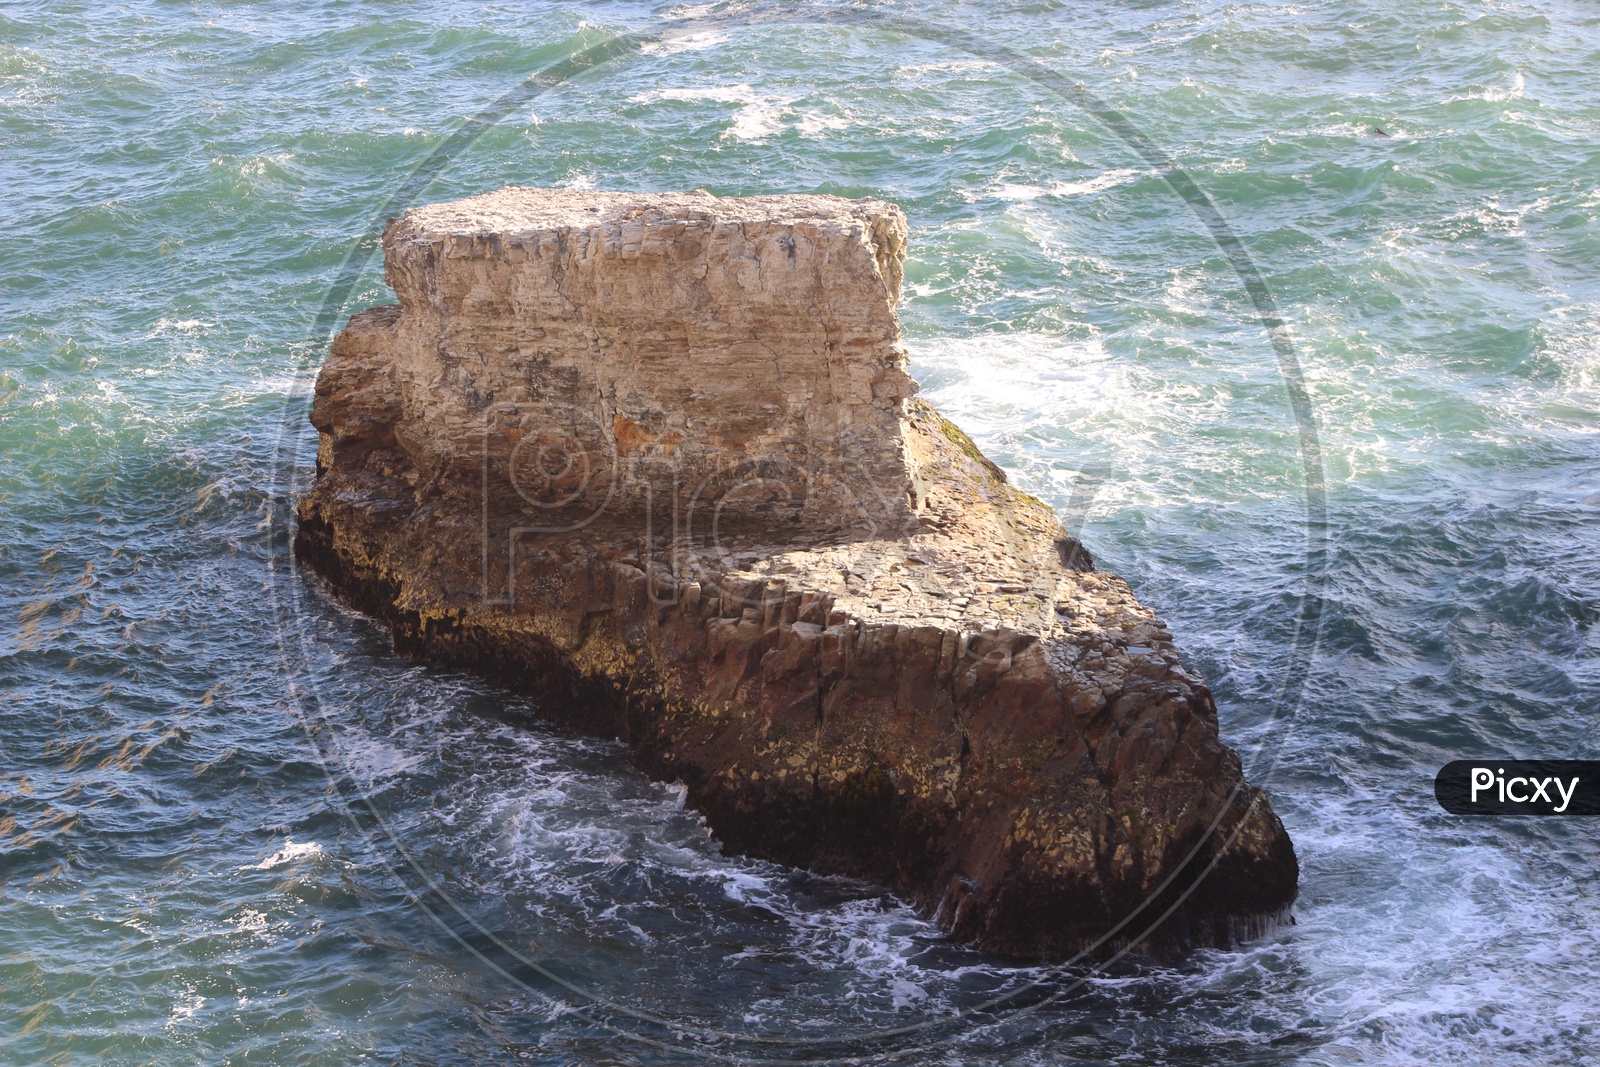 A Massive outcrop rock in the sea